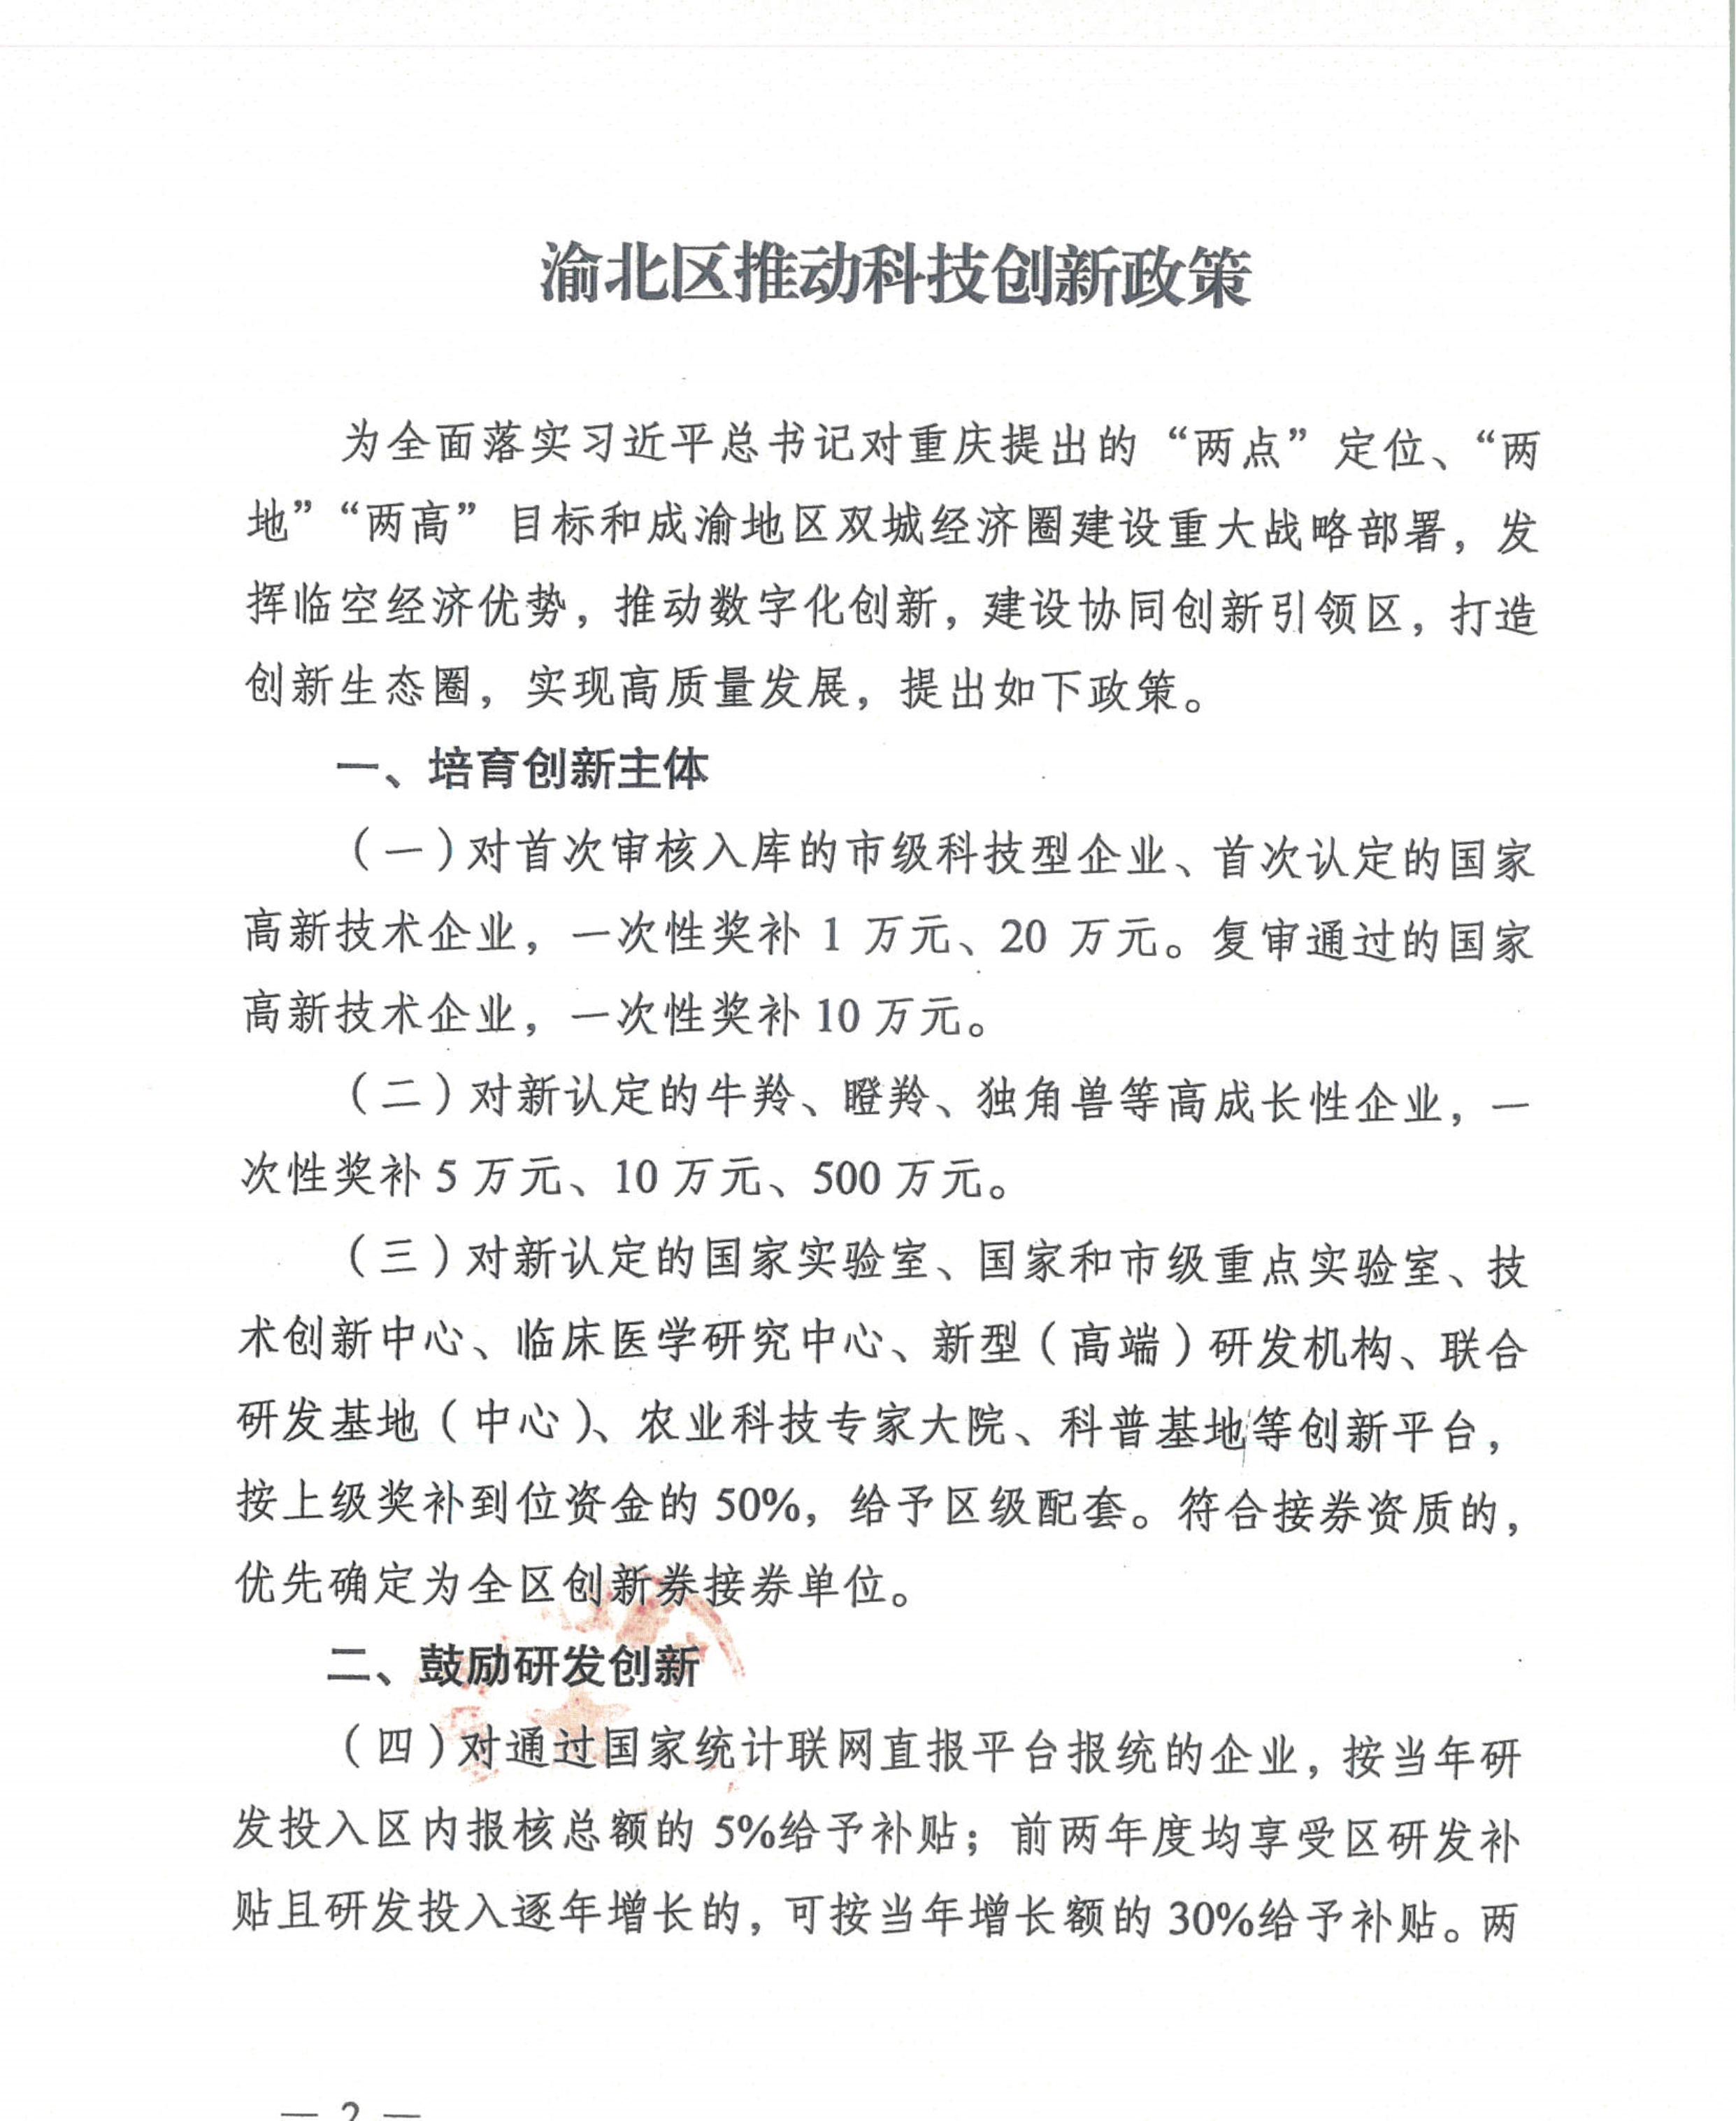 重庆市渝北区人民政府办公室关于《渝北区推动科技创新政策》通知(图2)